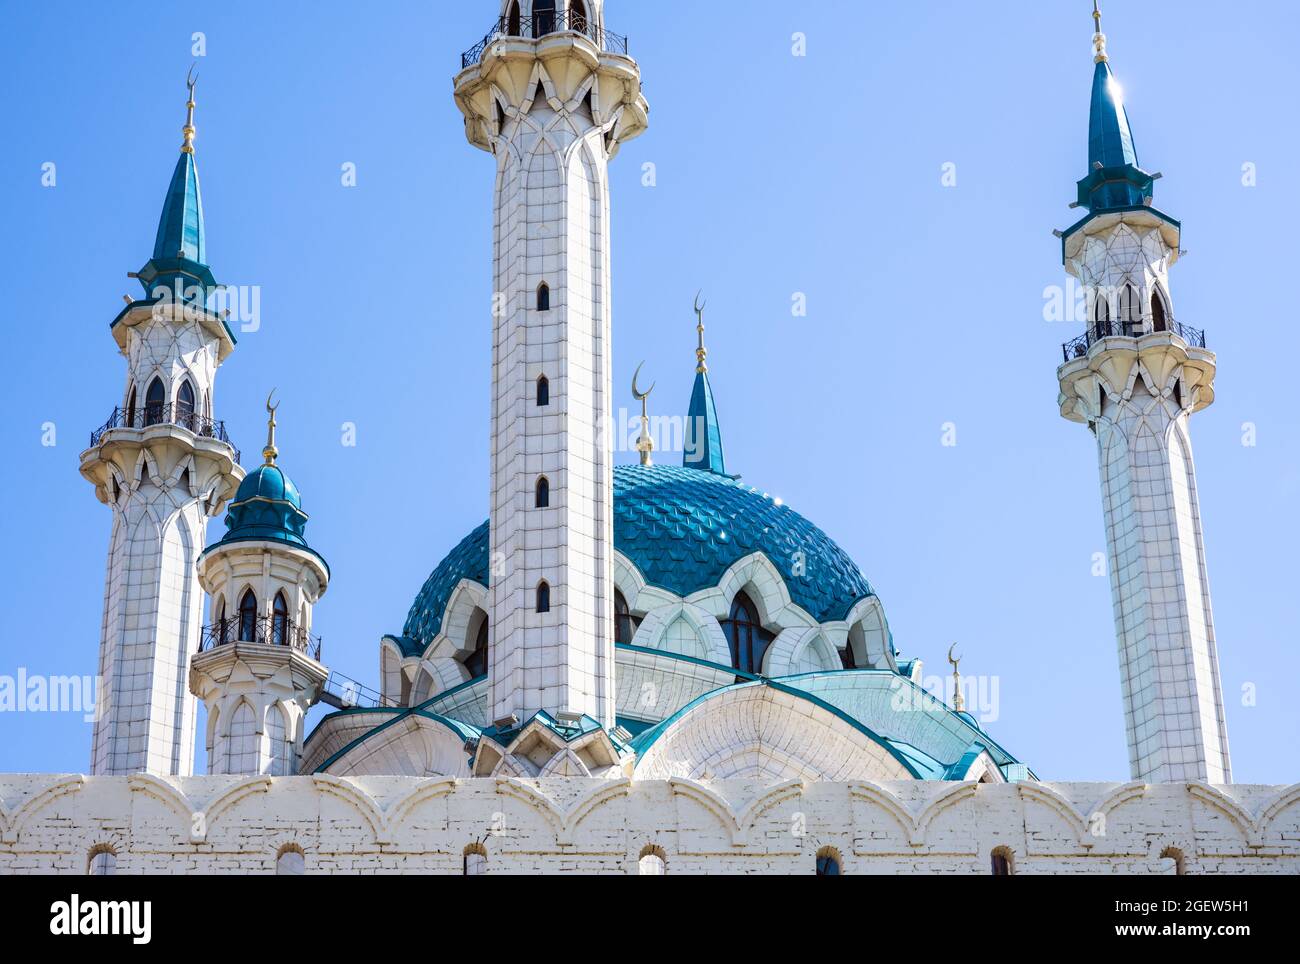 Kul Sharif Moschee in Kasan Kreml, Tatarstan, Russland. Es ist das Wahrzeichen von Kazan. Schöne Touristenattraktion, moderne islamische Architektur gegen Blau Stockfoto